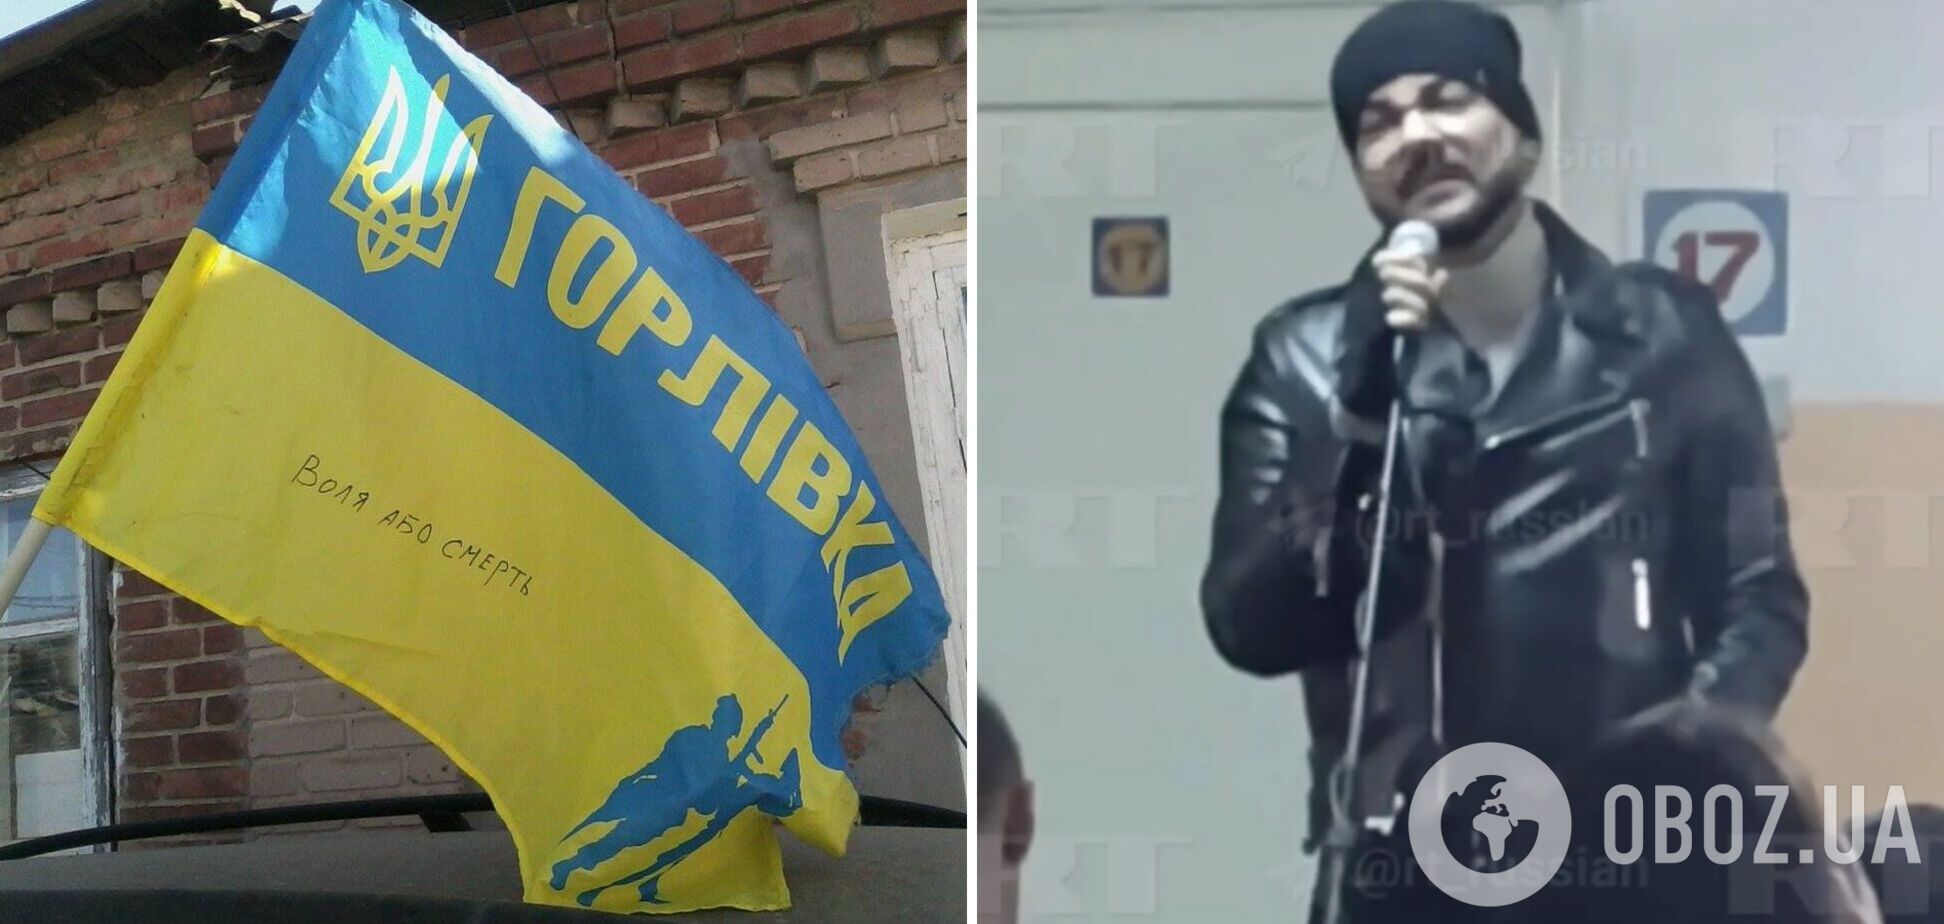 Филипп Киркоров после 'голой вечеринки' приехал на оккупированный Донбасс 'отмаливать грехи'